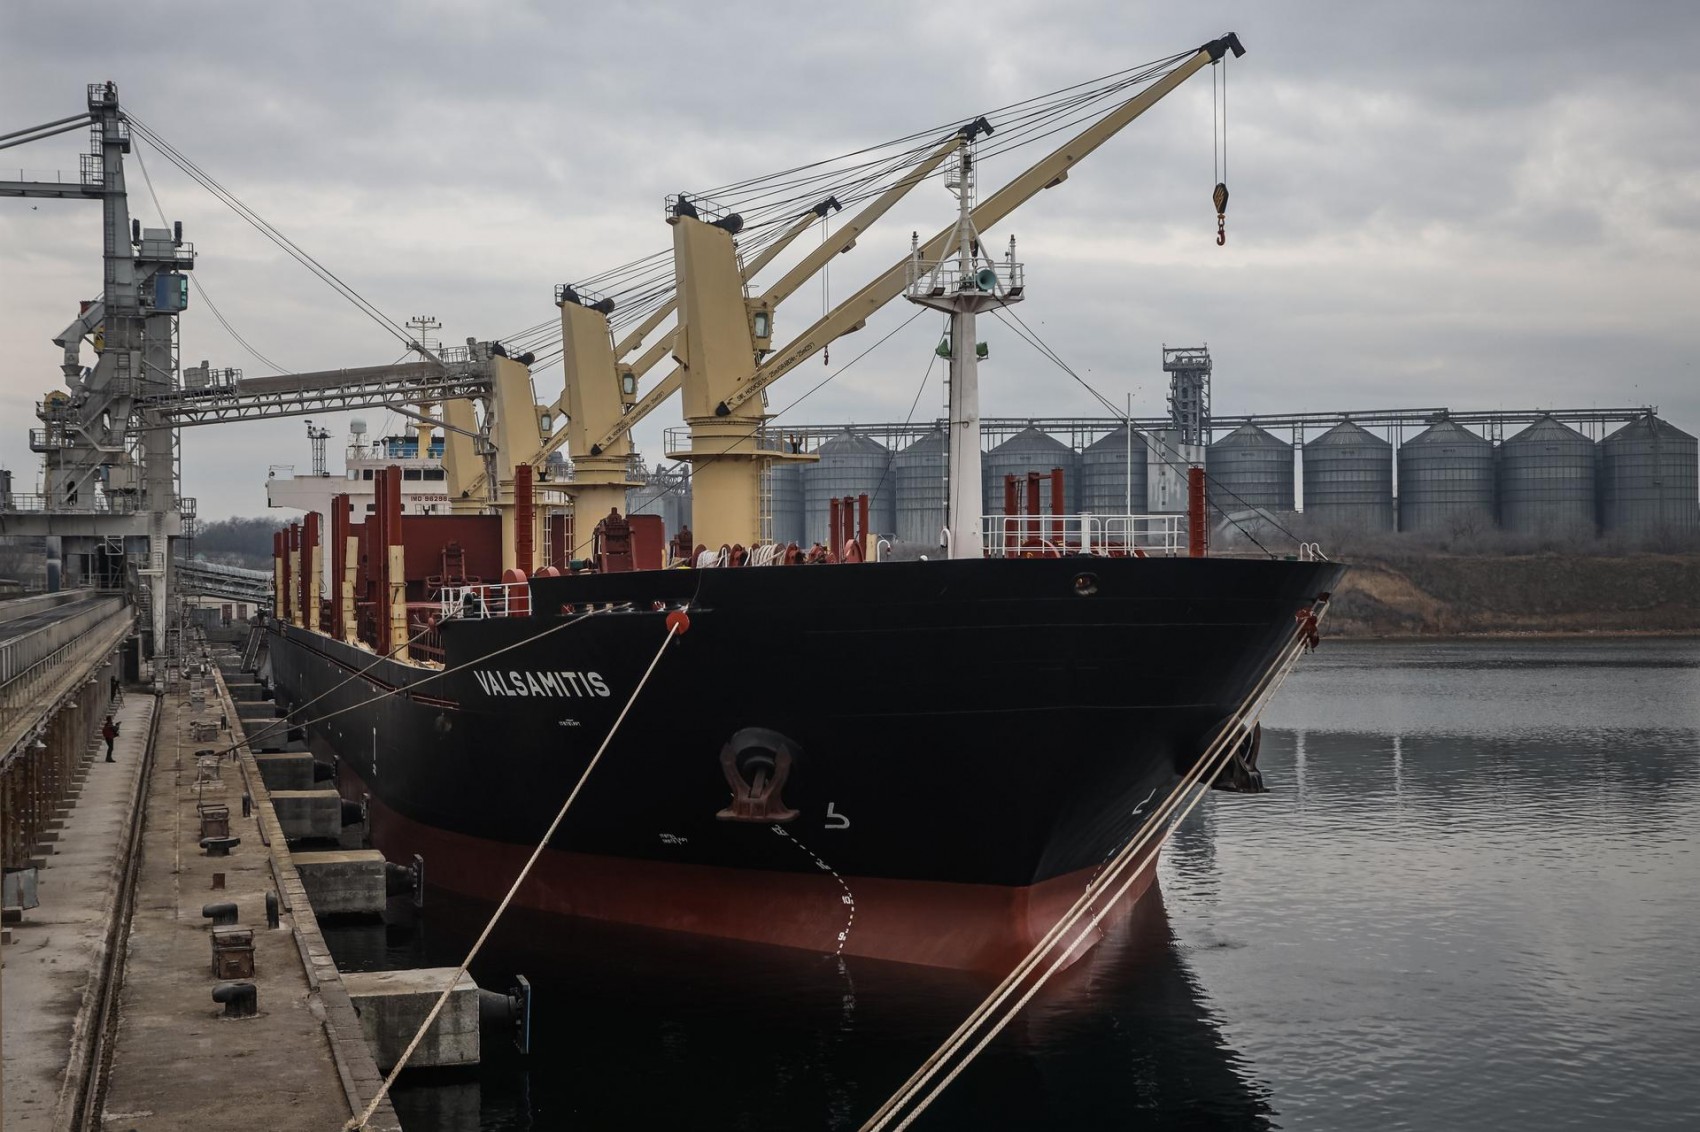 До порту "Південний" пройшов суховантаж Navios Sagittarius дедвейтом 75,6 тисячі тонн під прапором Панами, який став першим судном у напрямку цього порту, пропущеним після 2 травня